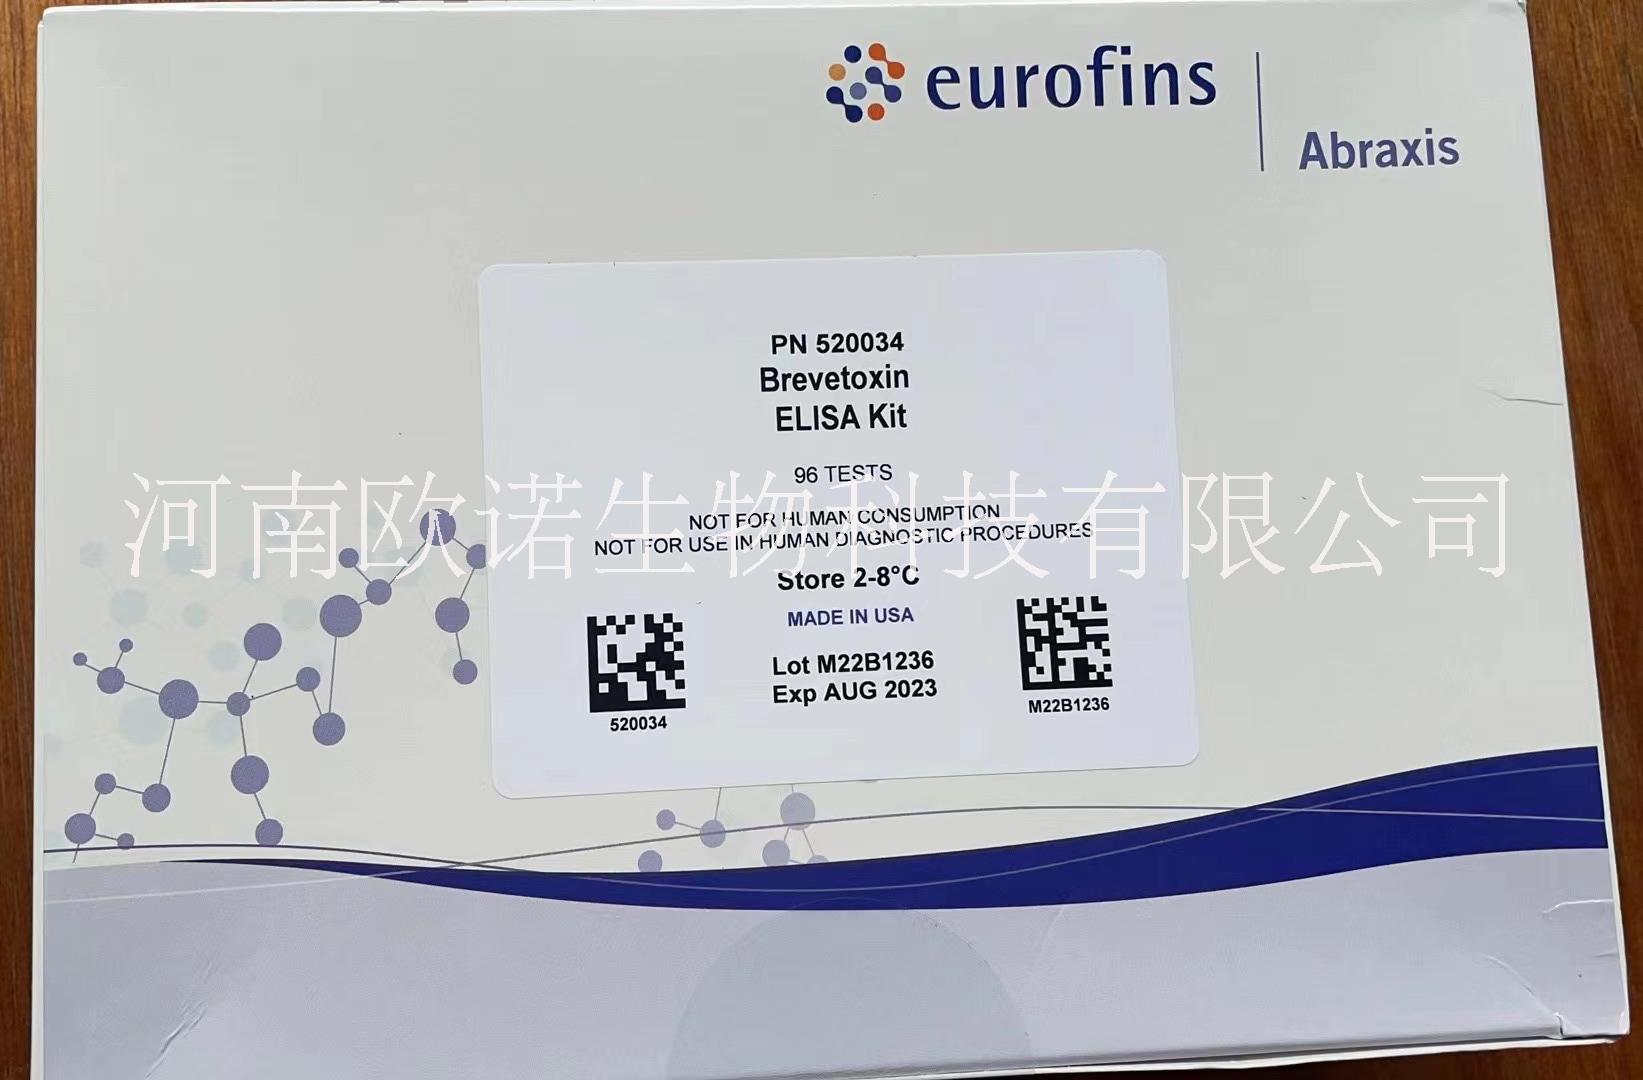 ABRaxis组胺检测试剂盒